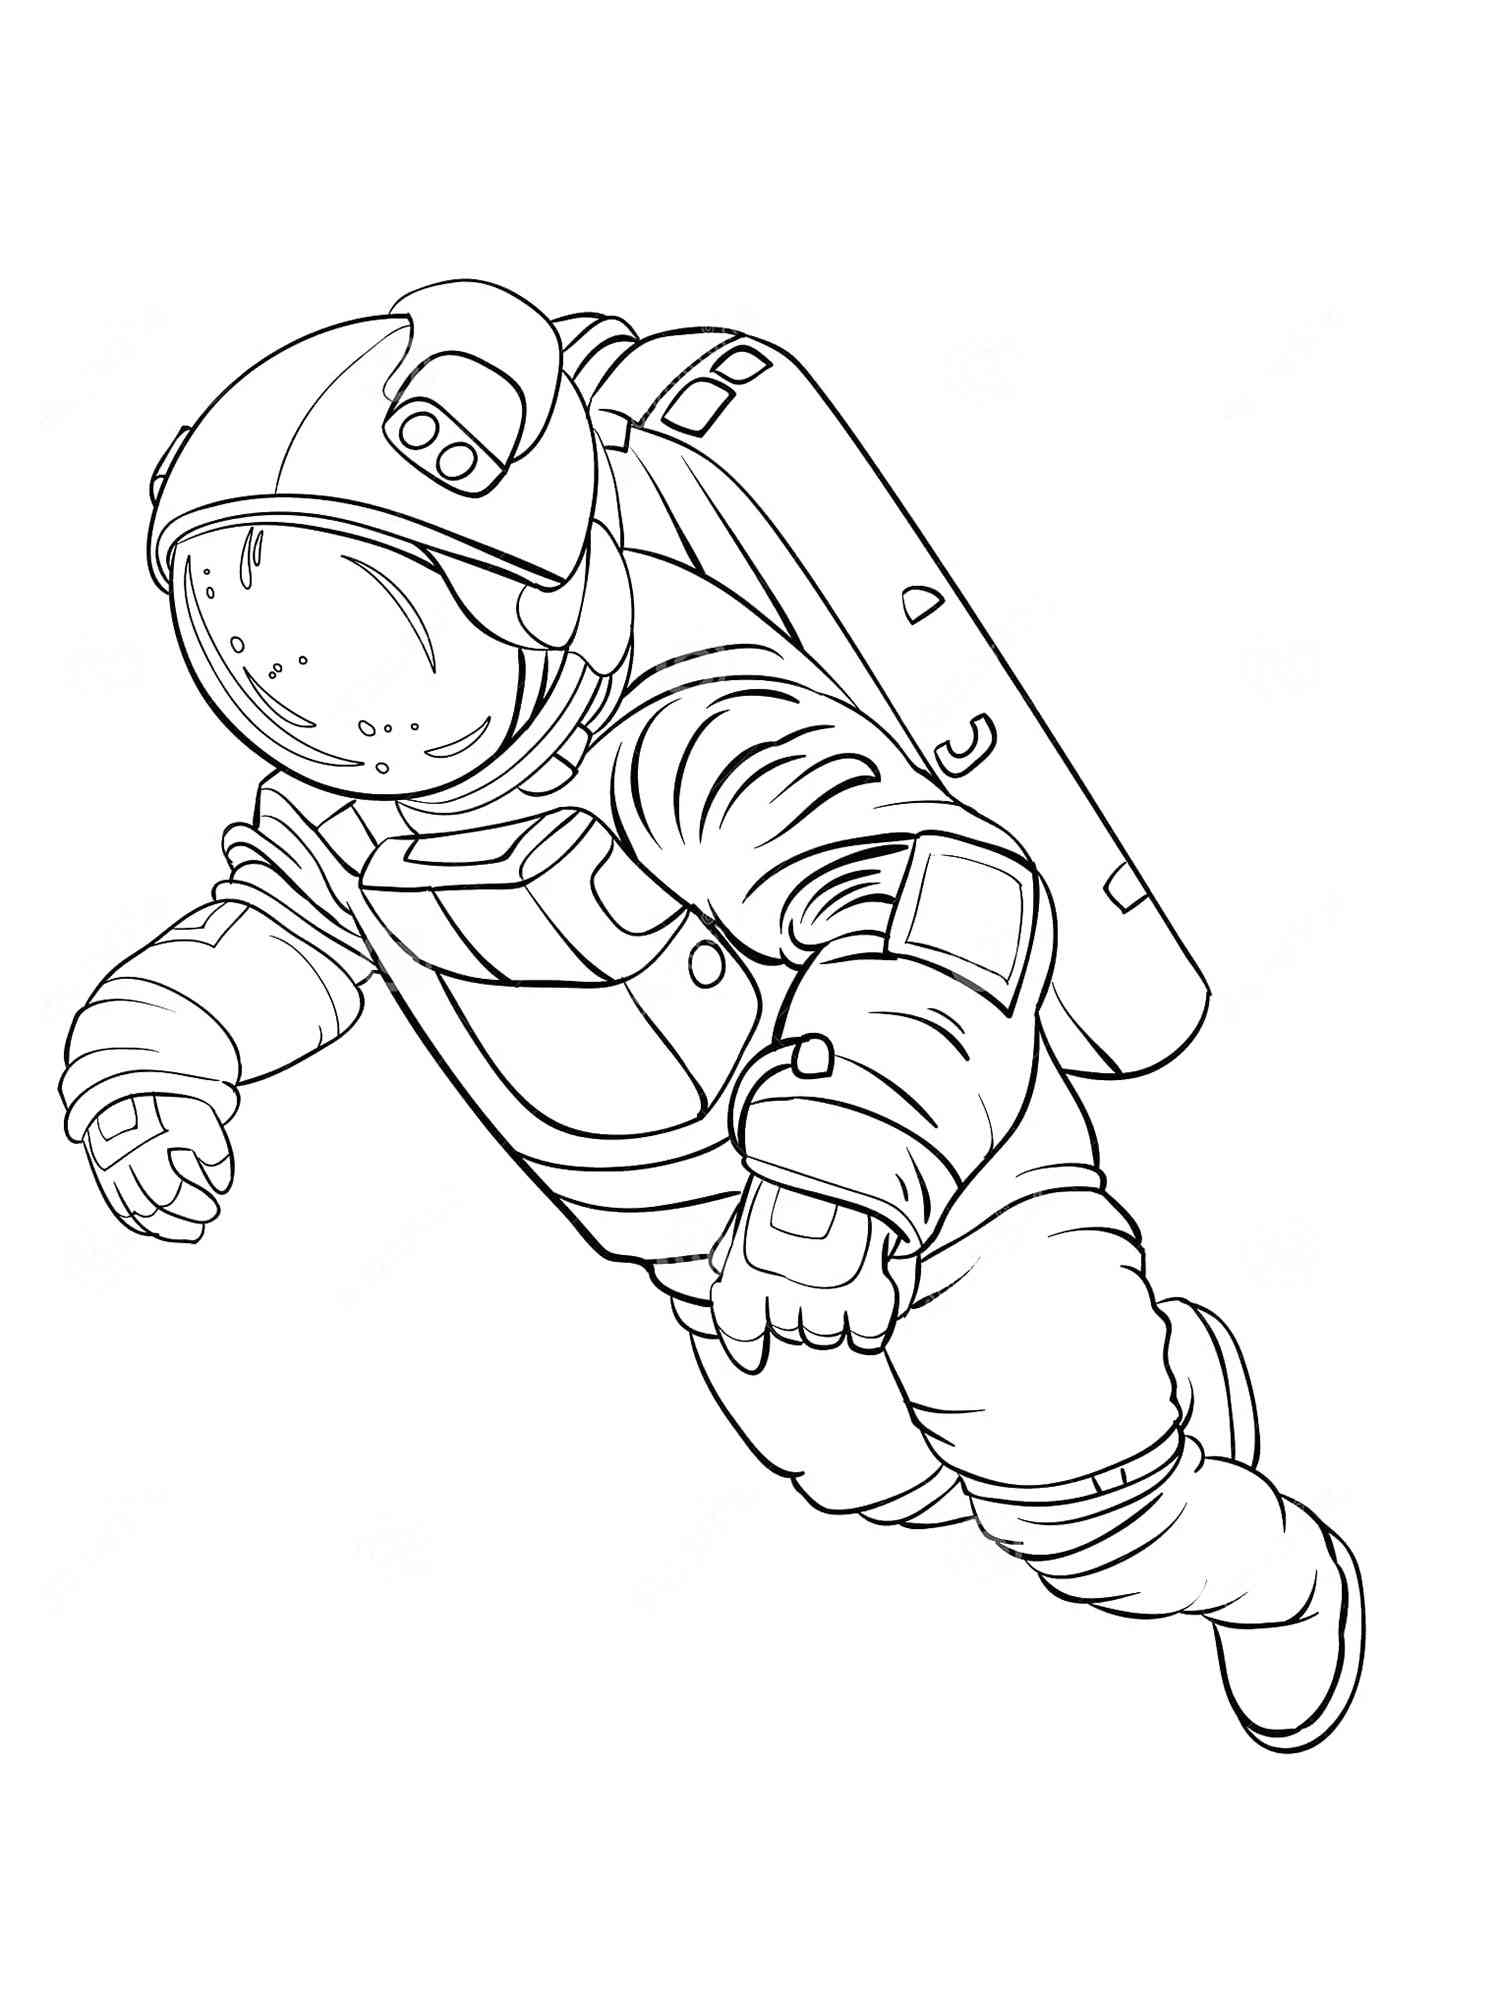 Рисунок космонавта в скафандре. Космонавт раскраска для детей. Космос раскраска для детей. Раскраска Космонавта в скафандре для детей. Раскраска про космос и Космонавтов для детей.